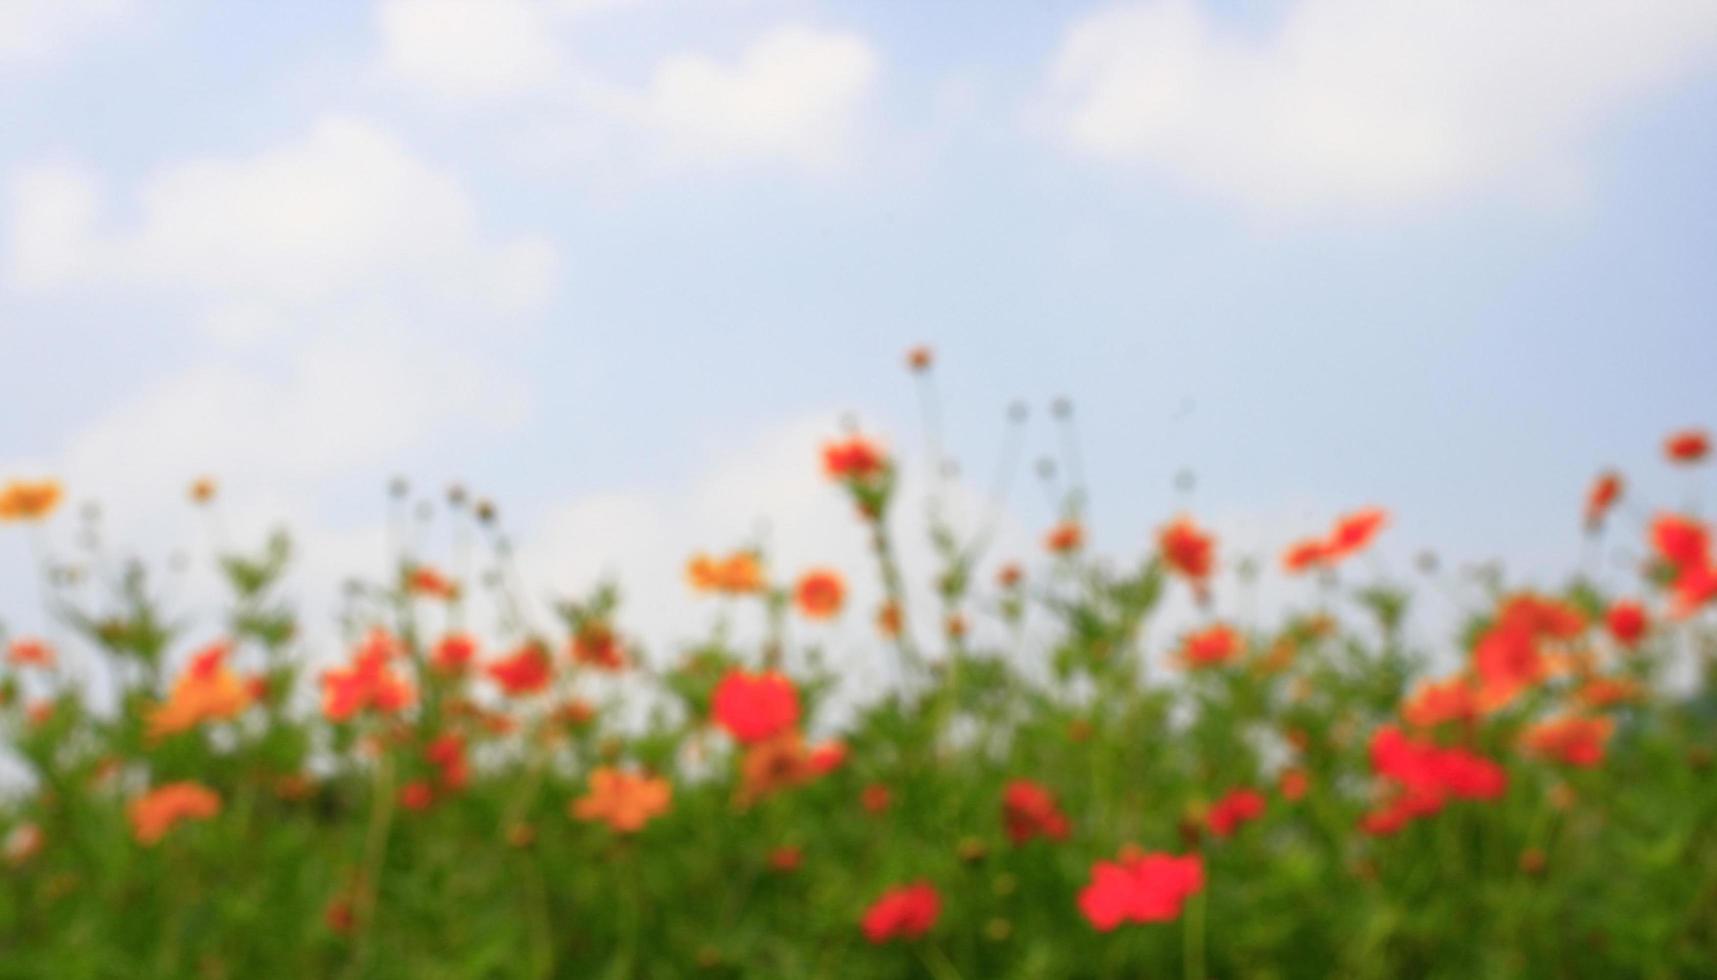 Blurred flower background photo